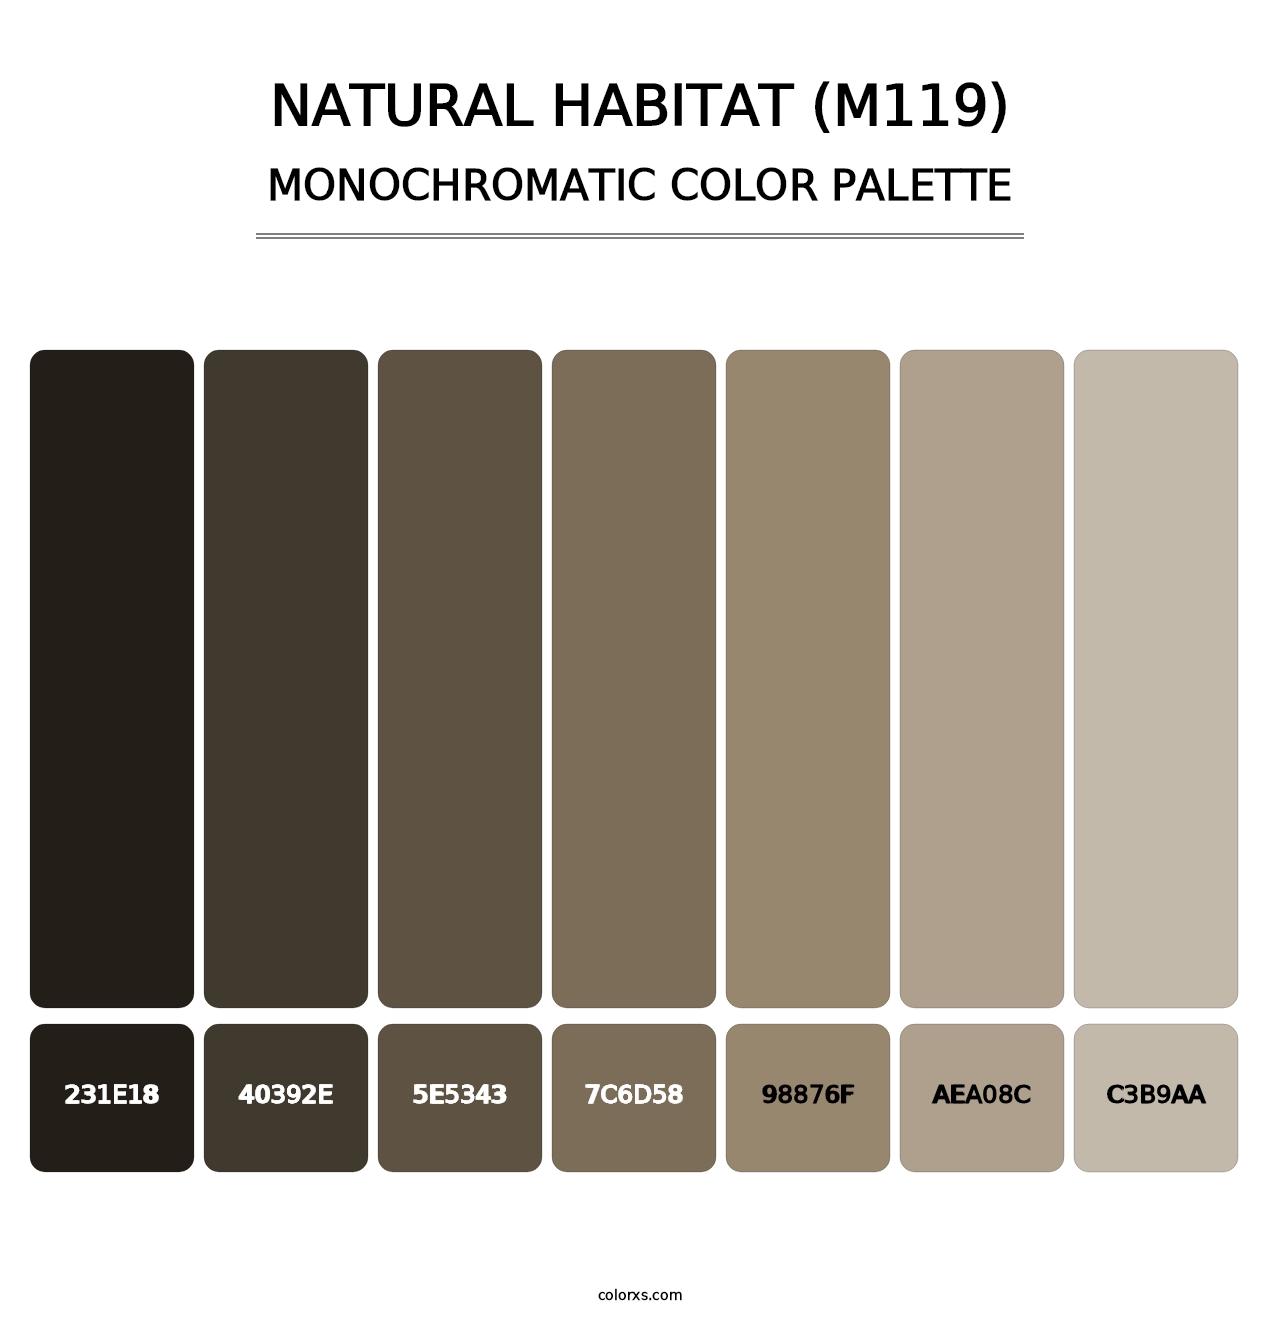 Natural Habitat (M119) - Monochromatic Color Palette